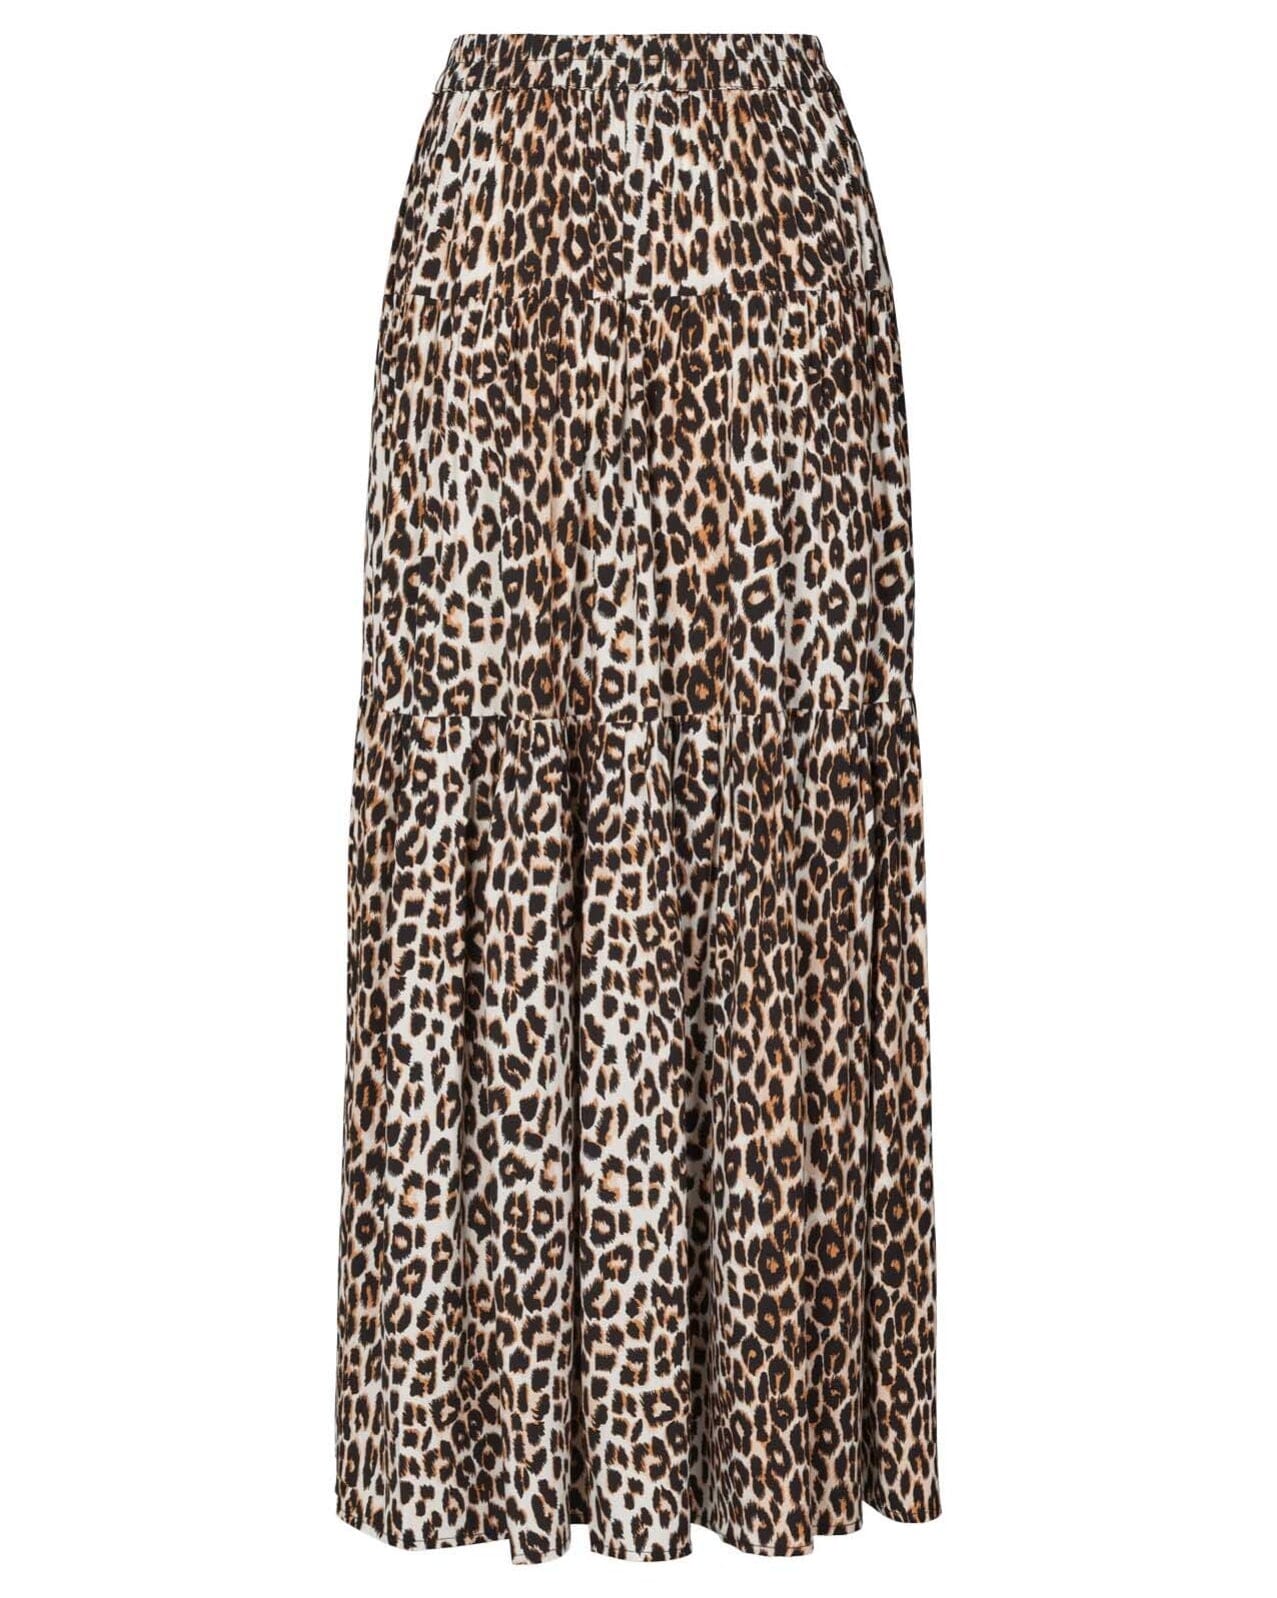 Lollys Laundry Sunset skirt - 72 Leopard Print